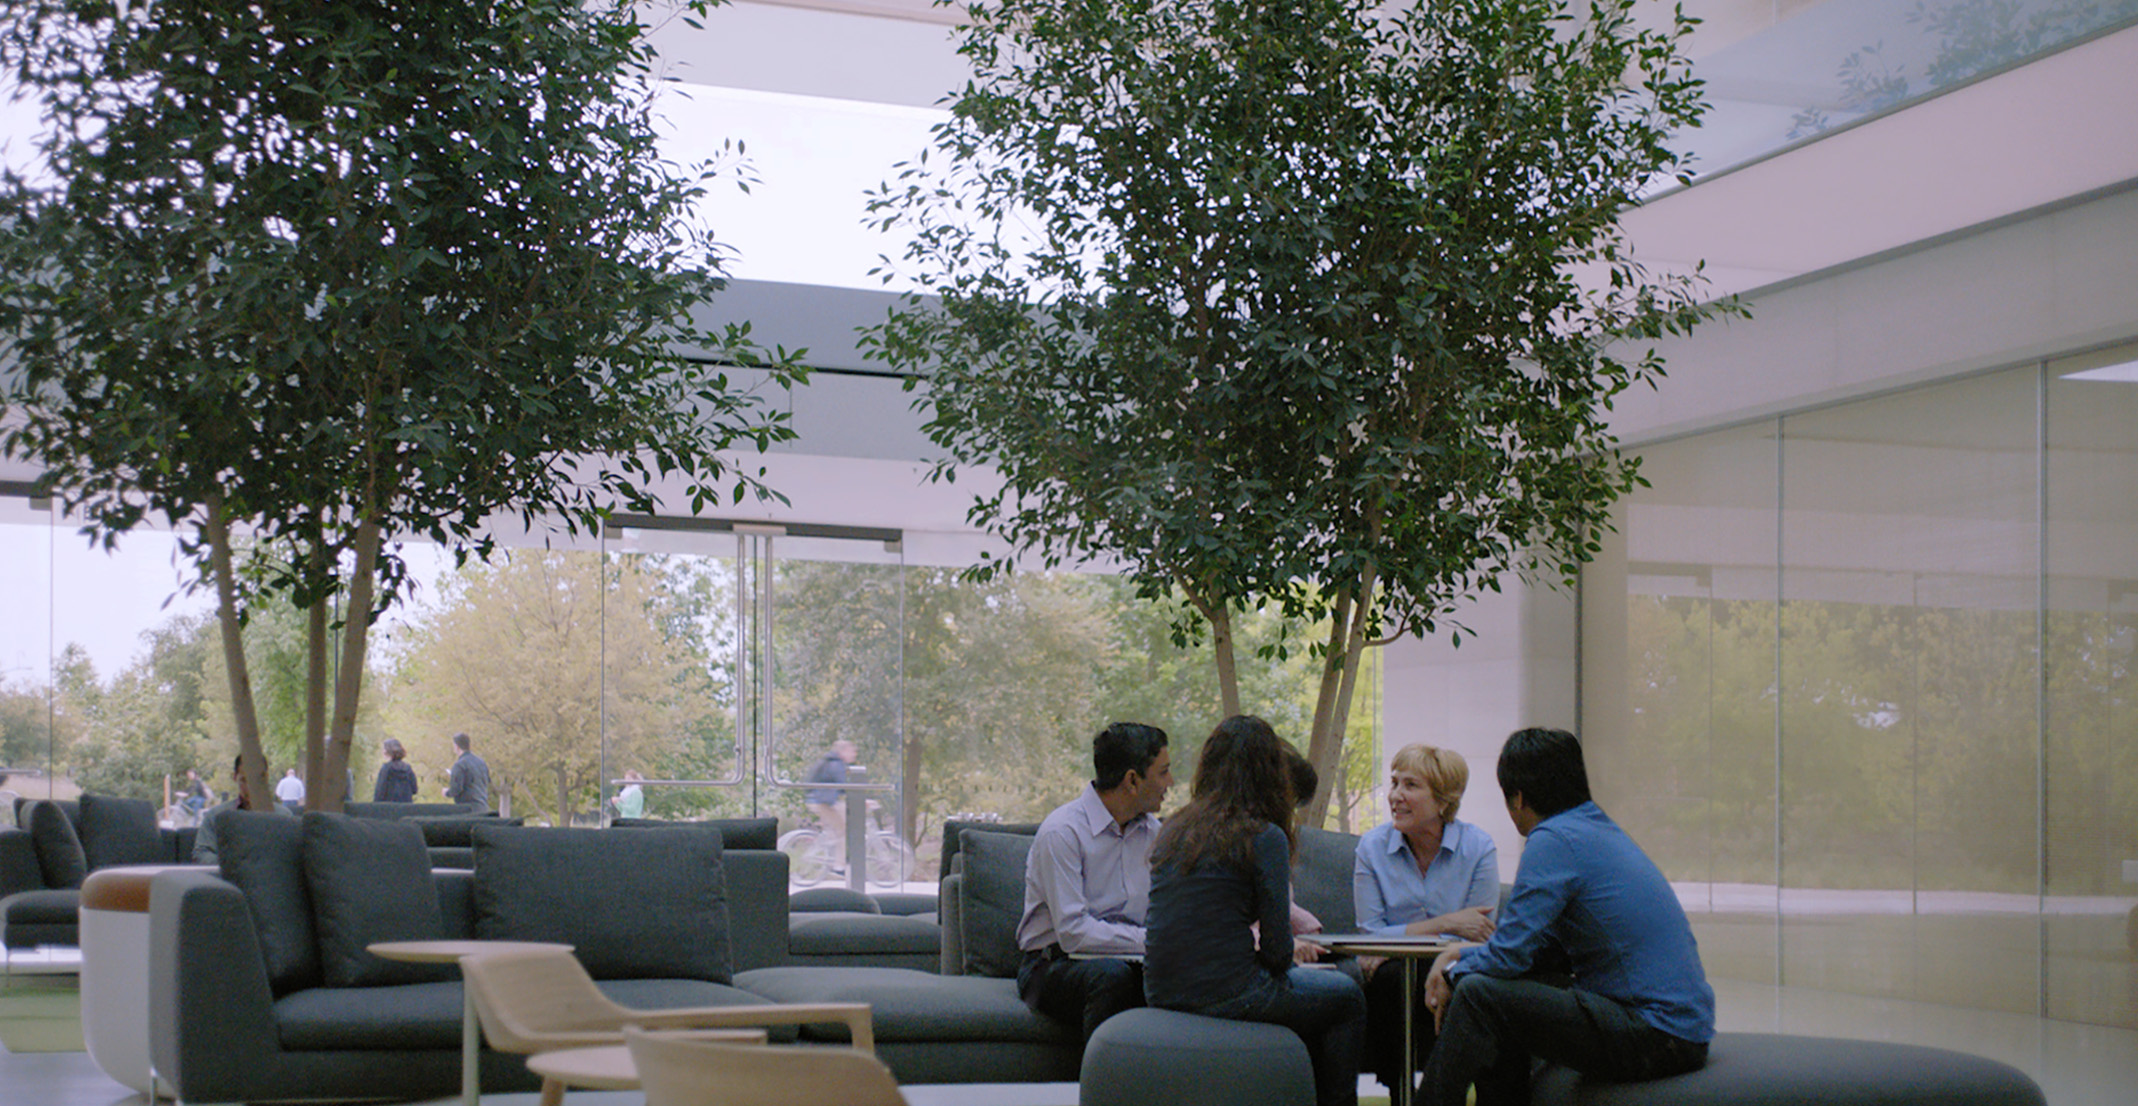 Giulia, encargada de un equipo de procesamiento de lenguaje natural, está sentada alrededor de una mesa junto con otros empleados de Apple.